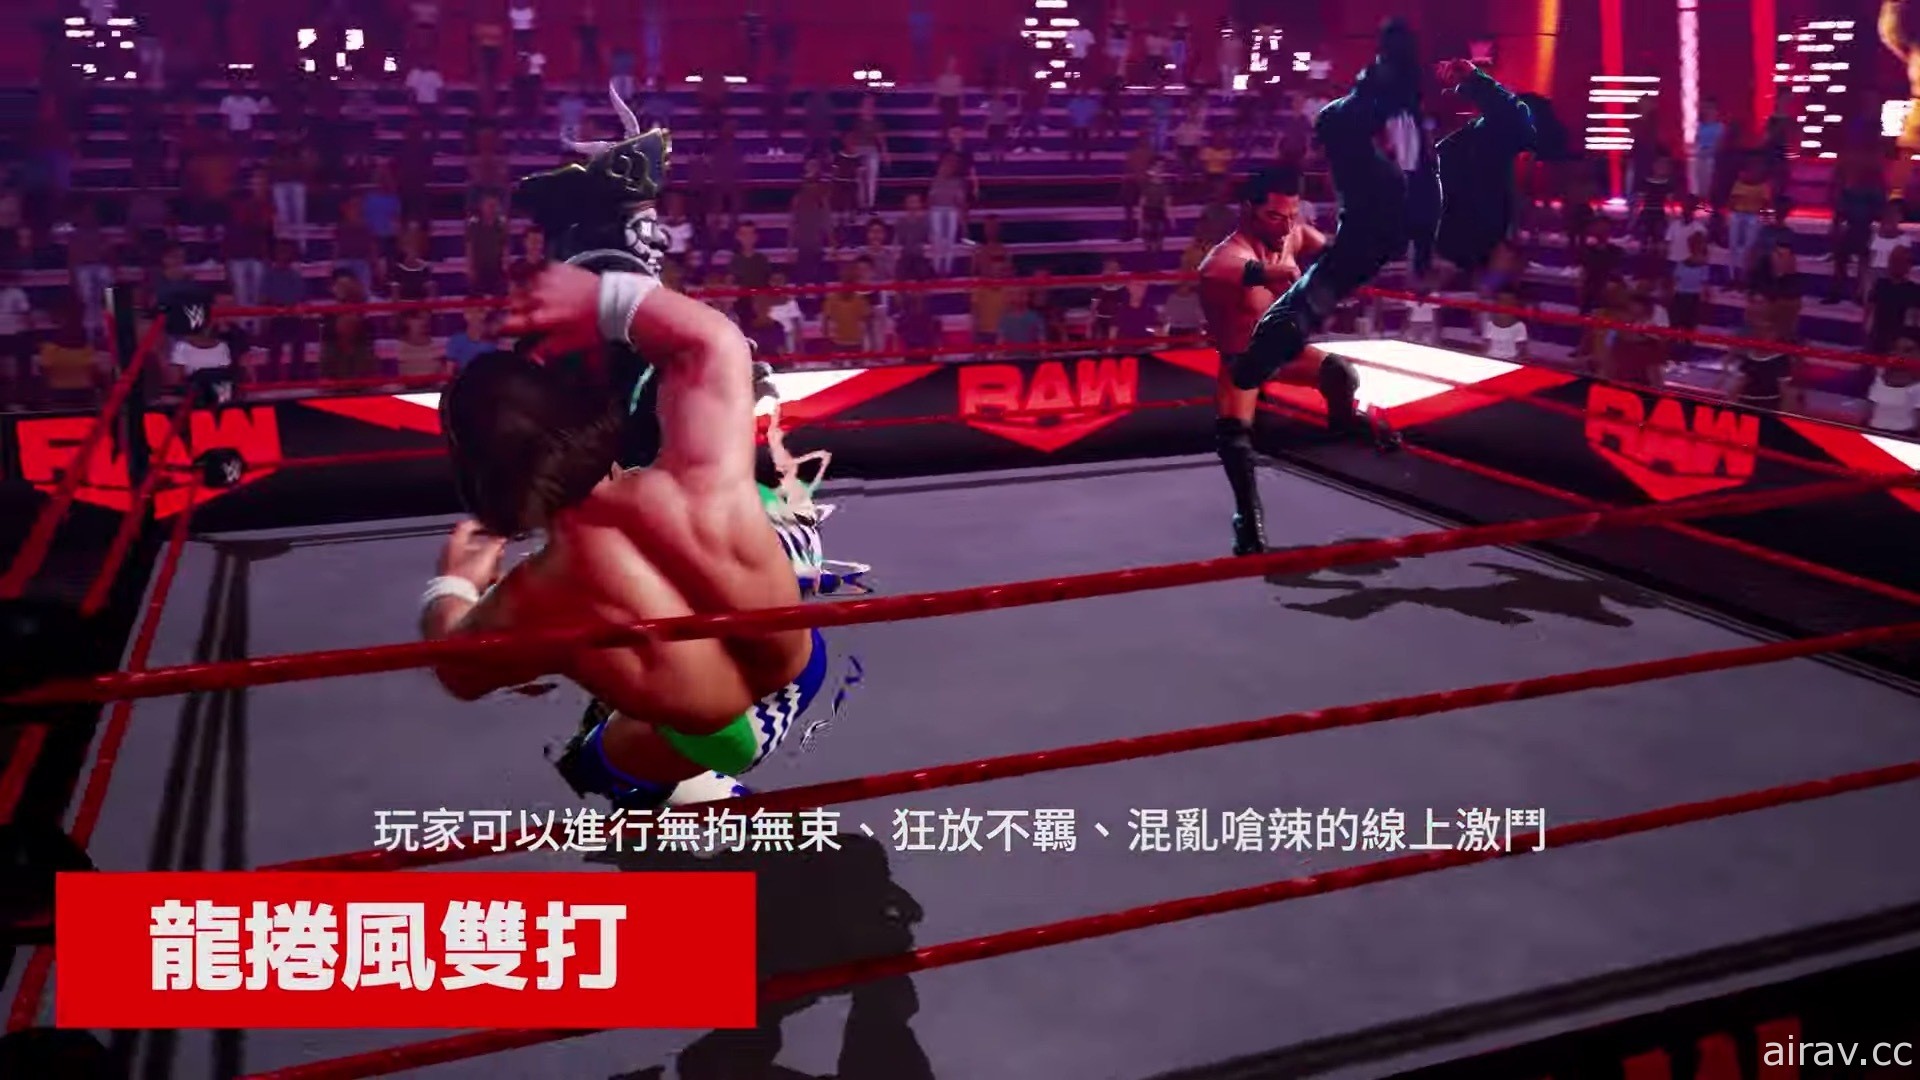 《WWE 2K 杀戮战场》将推出各种游戏模式 用自己的方式打斗吧！